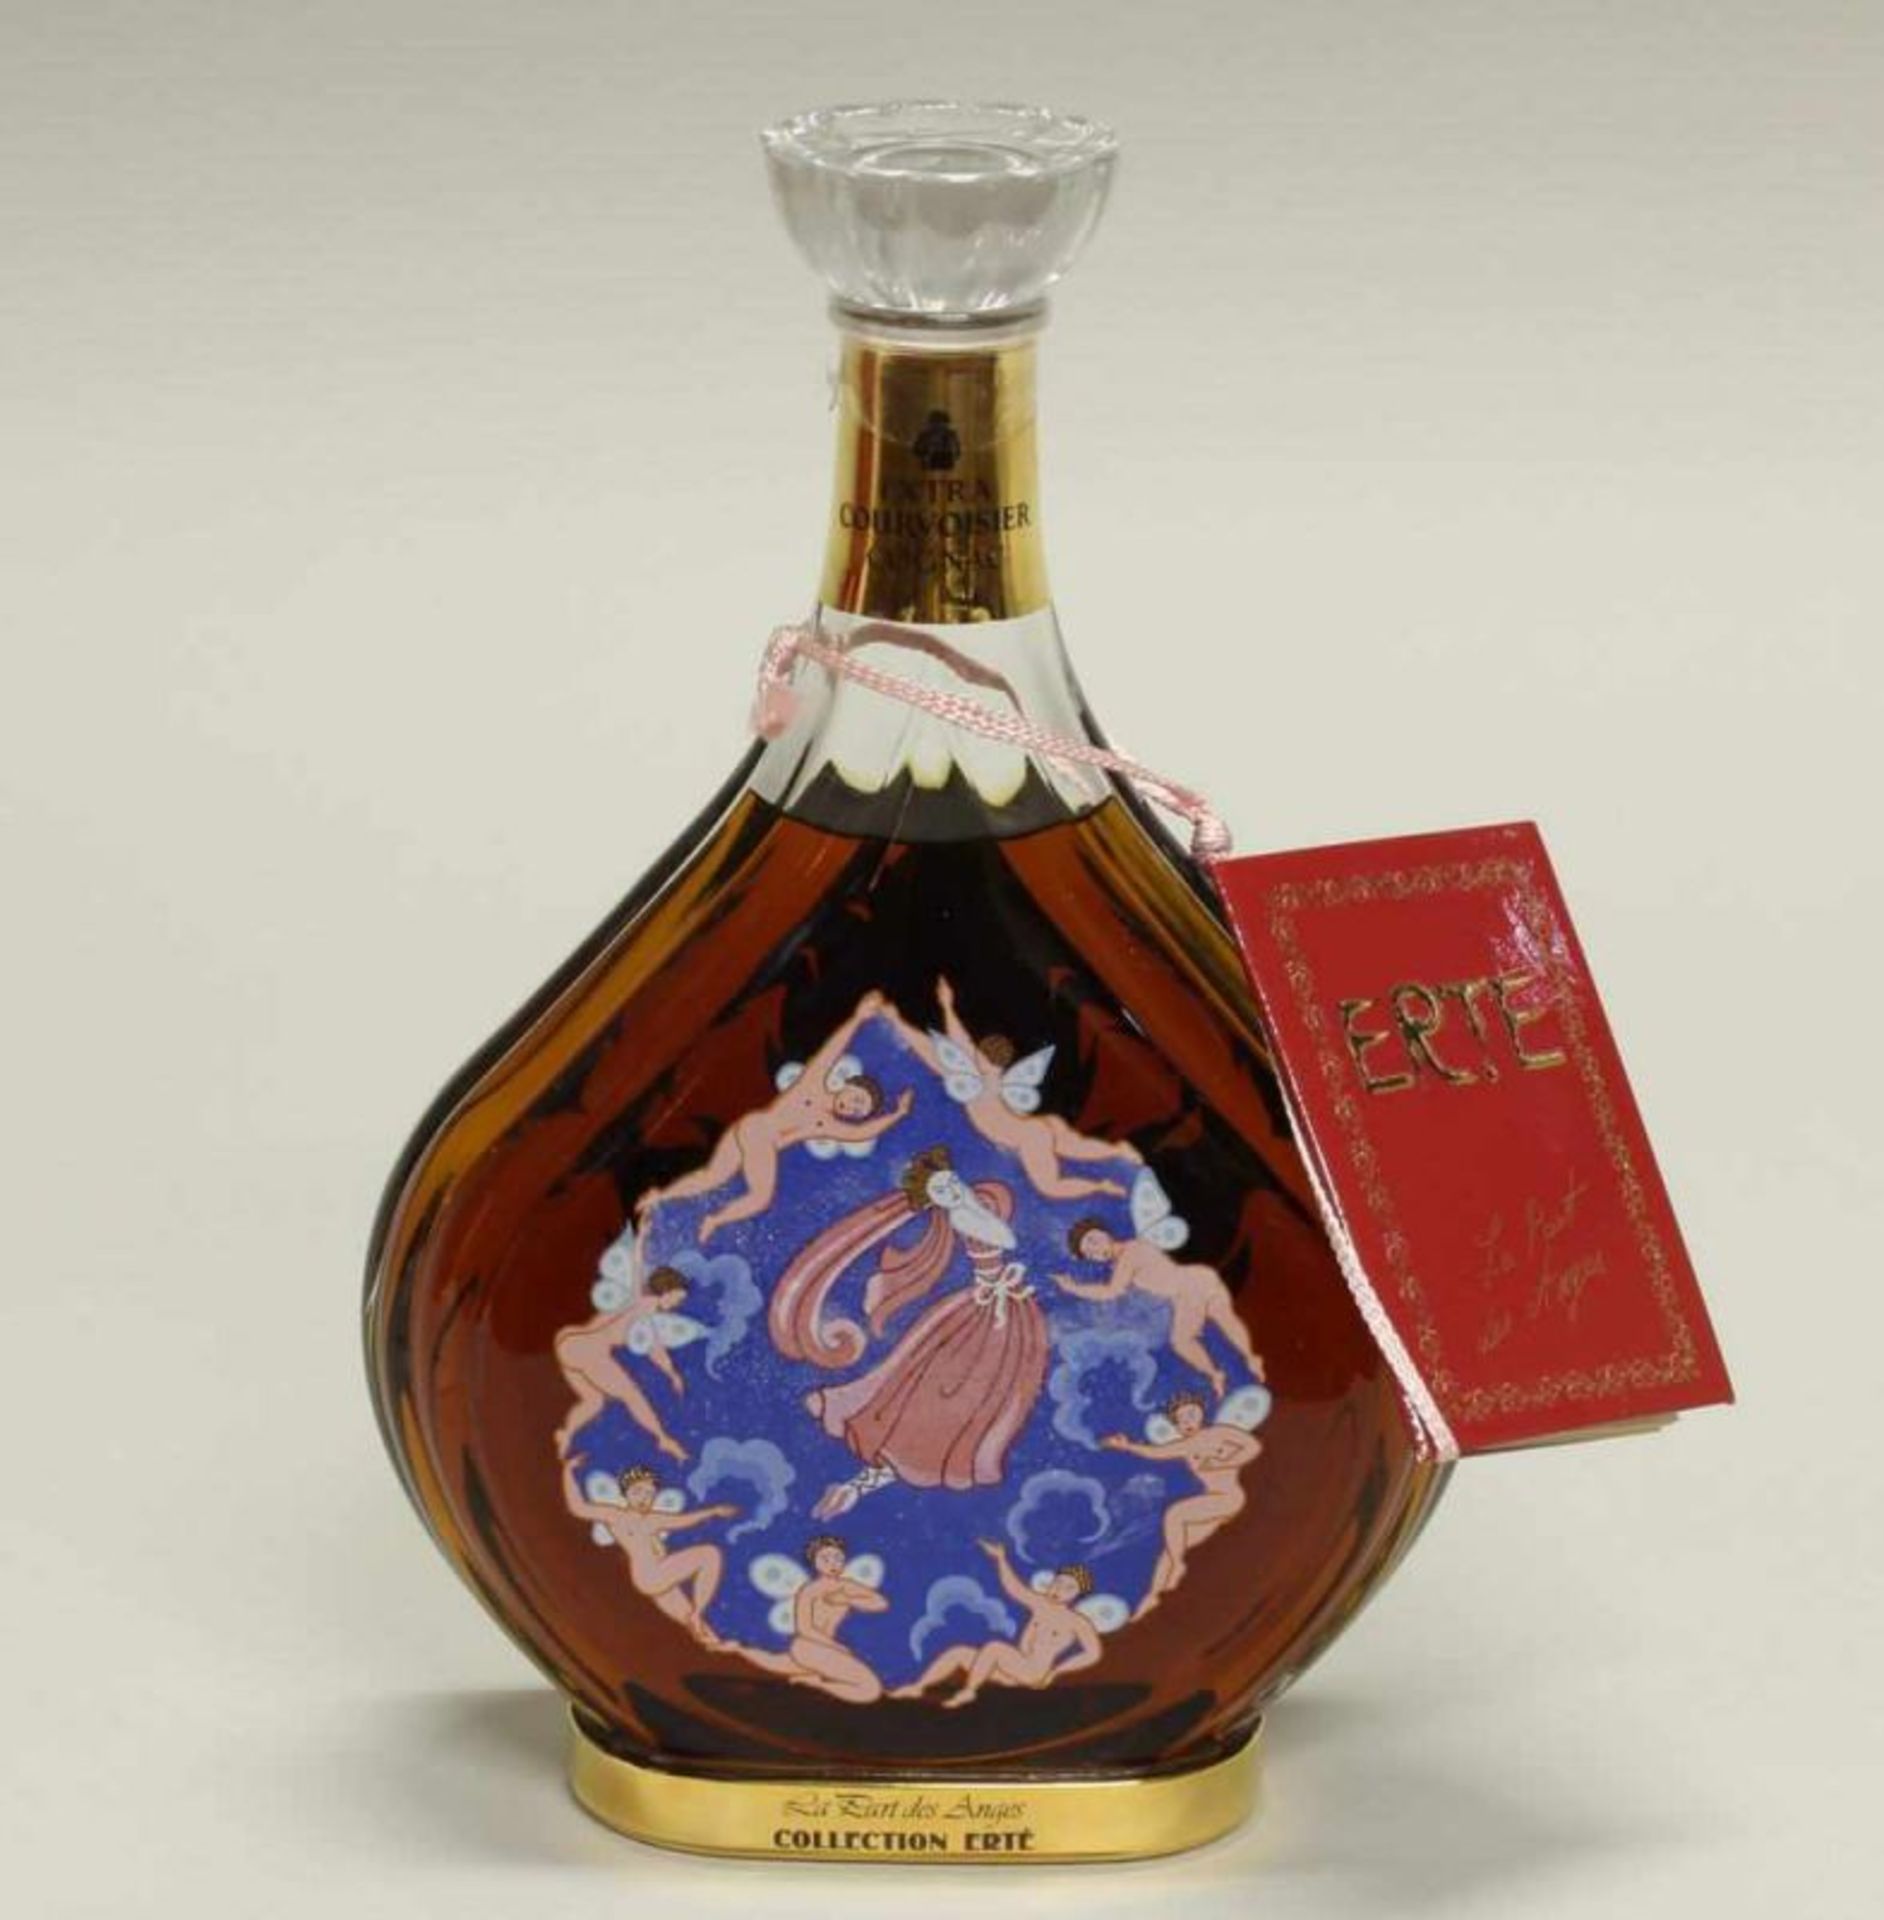 7 Flaschen Cognac, "Courvoisier Cognac Collection Erté", 40 % vol, Flaschen und Originaletuis nach - Image 3 of 9